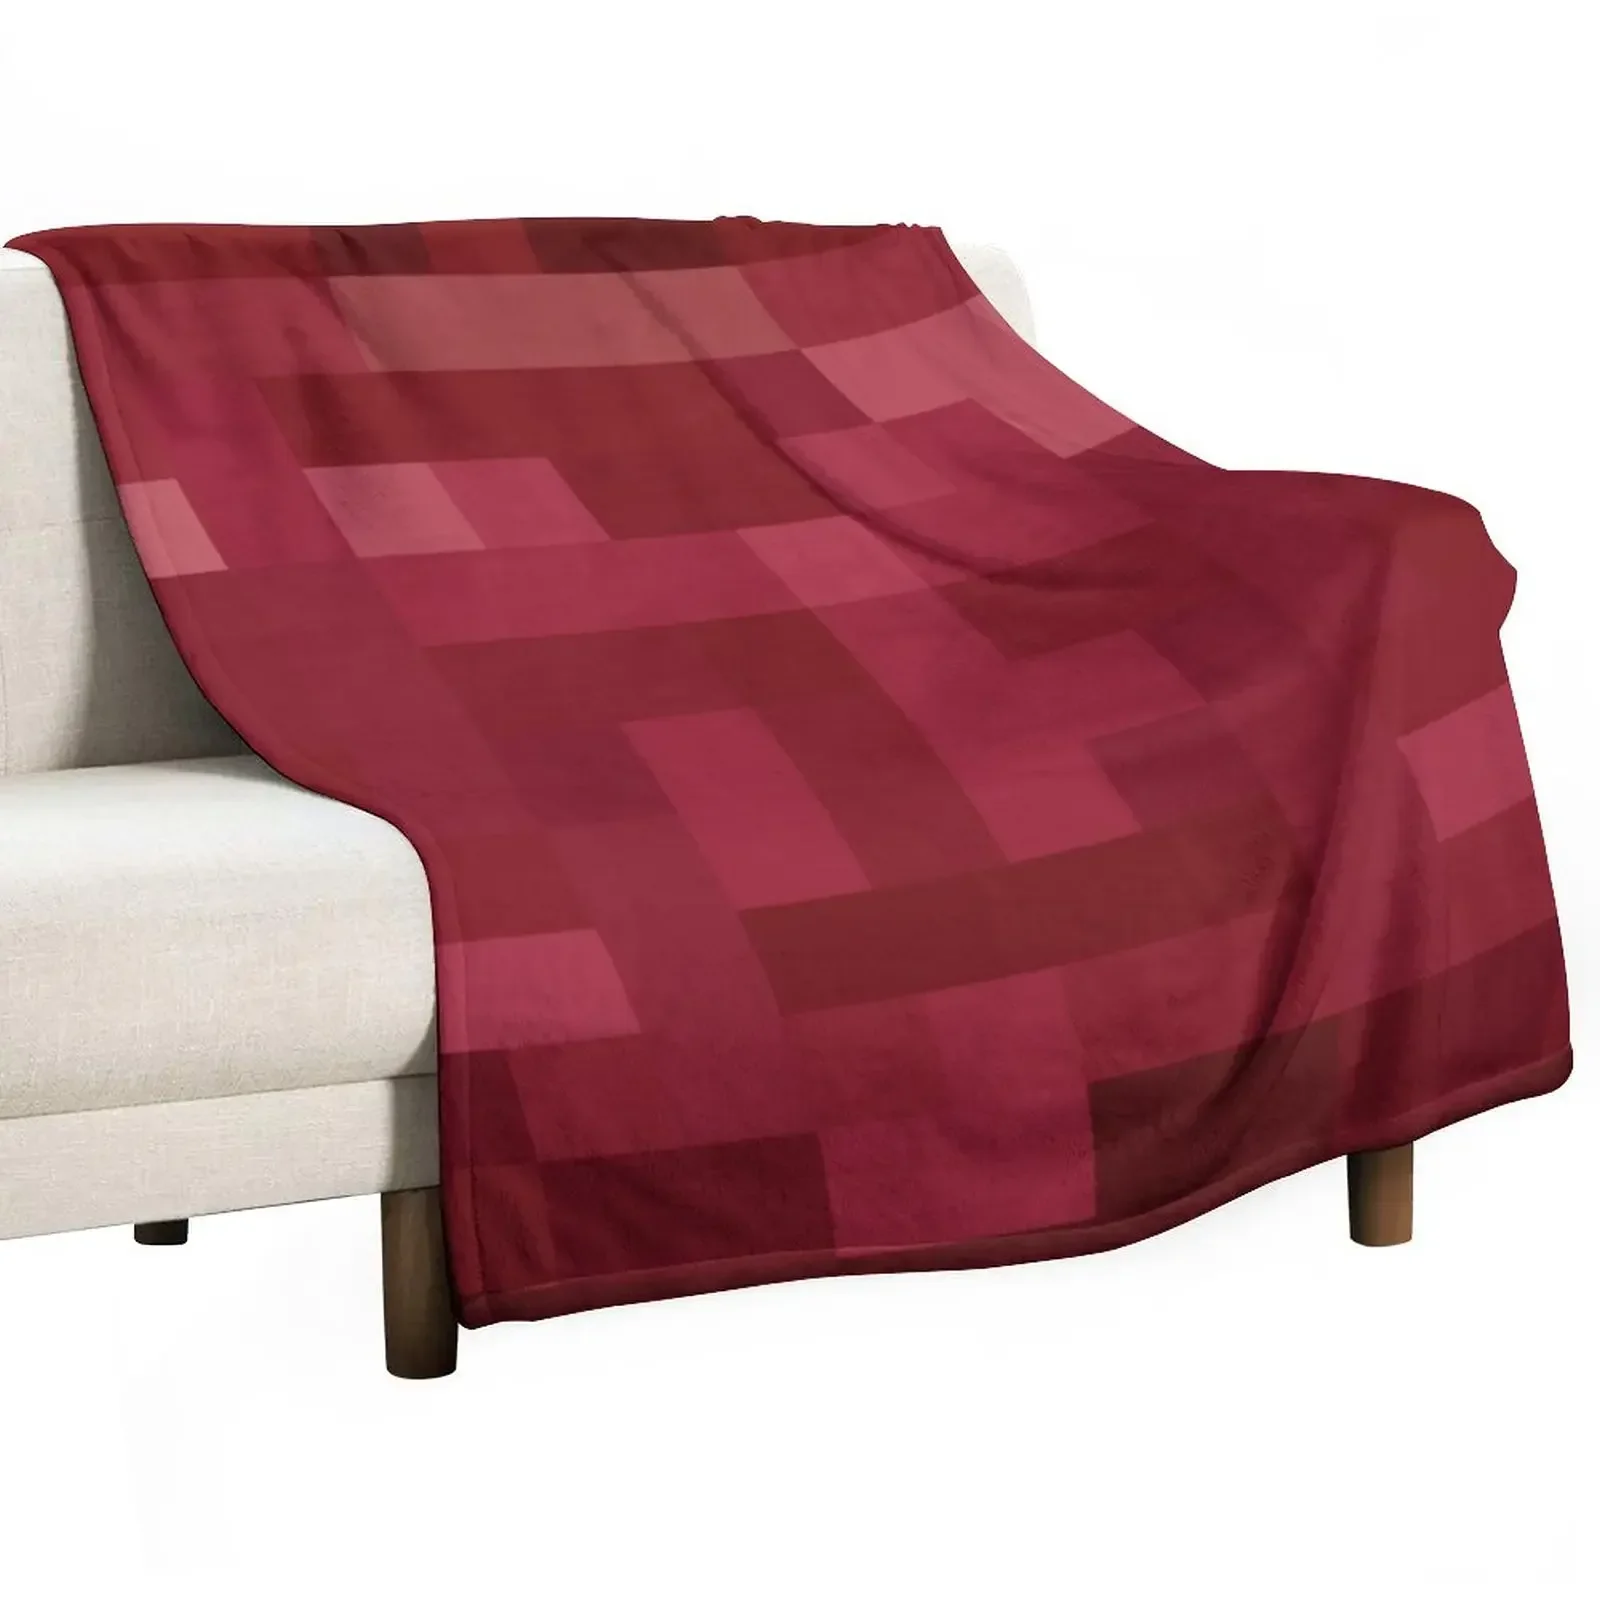 

Красно-белое покрывало PixelDesign, покрывала для кровати, туристические одеяла Hairys